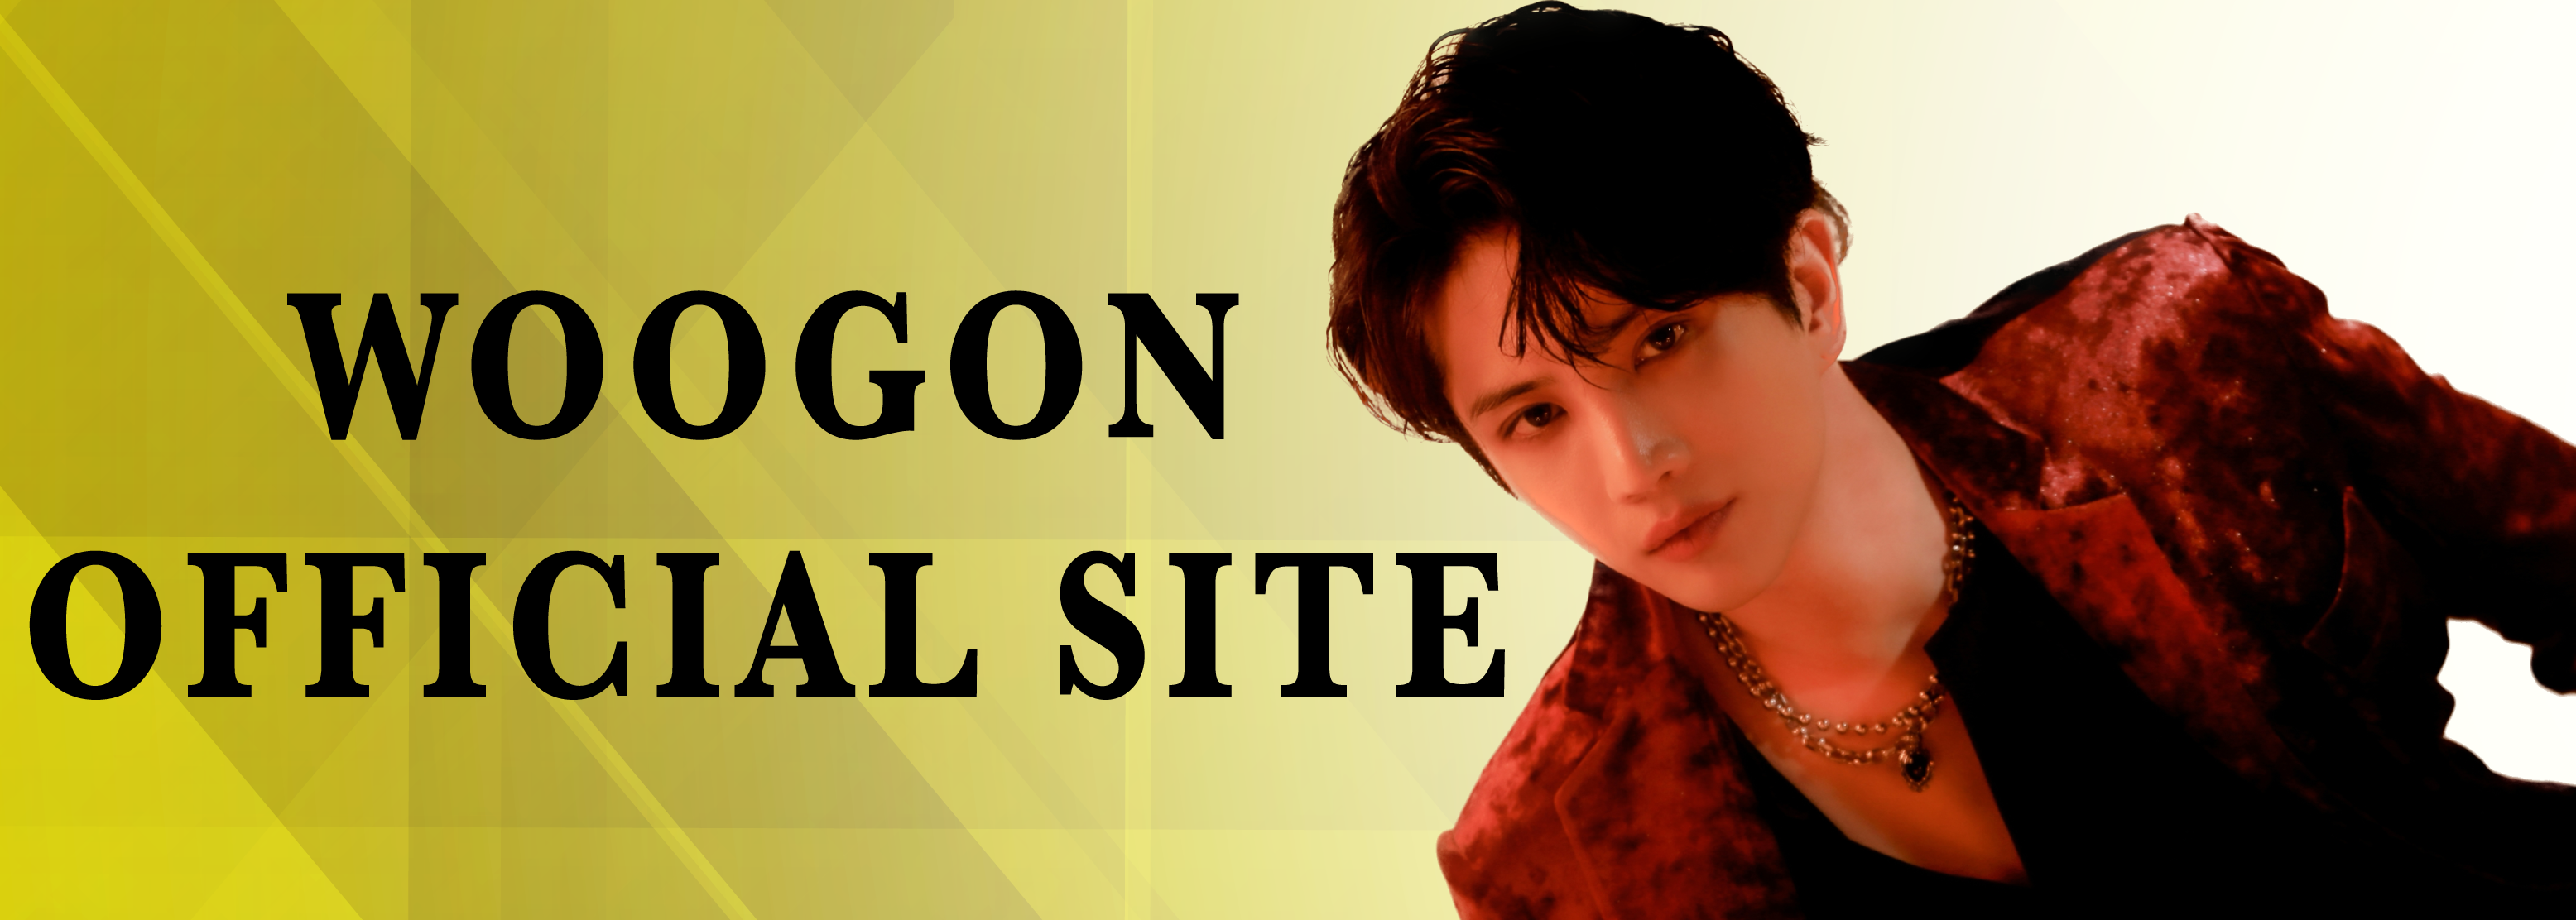 ウゴン オフィシャルサイト